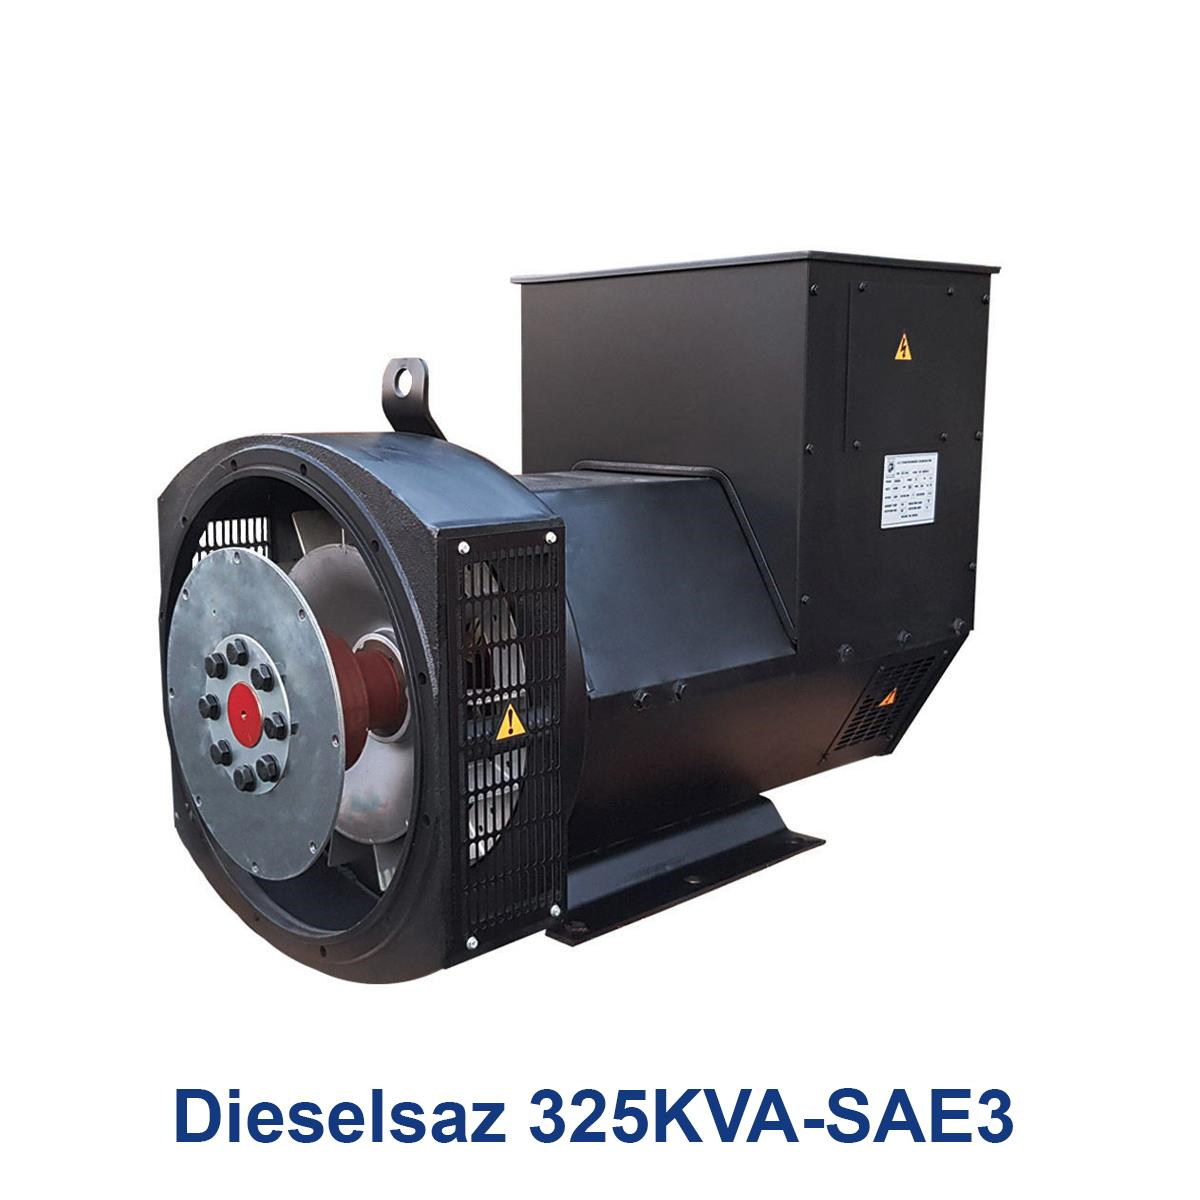 Dieselsaz-325KVA-SAE3